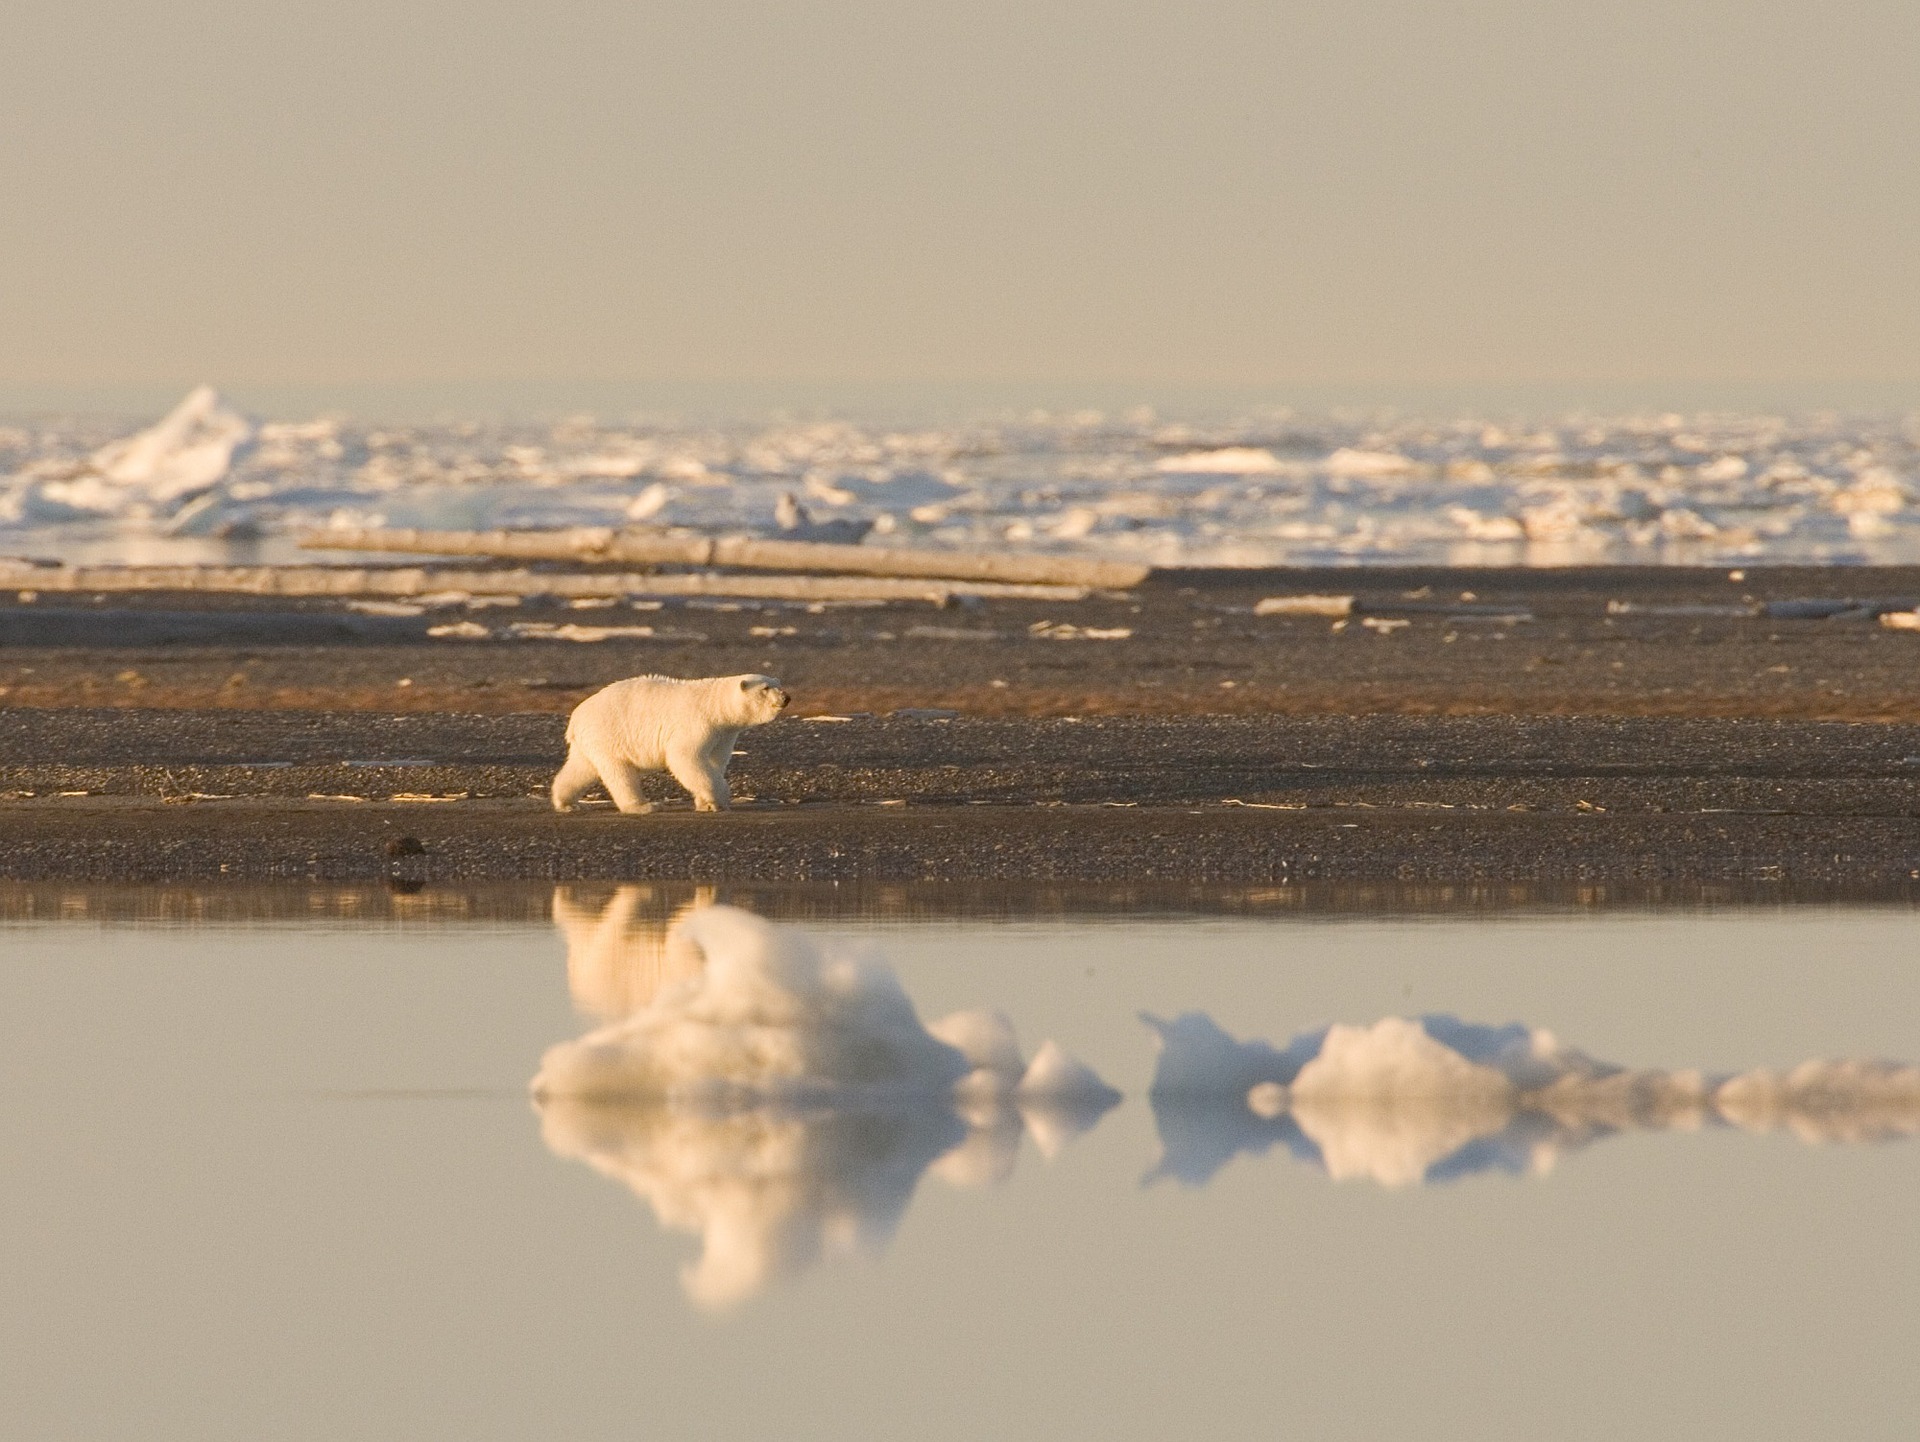 Арктика за неделю: беседа о важном, международное продвижение и вести науки 